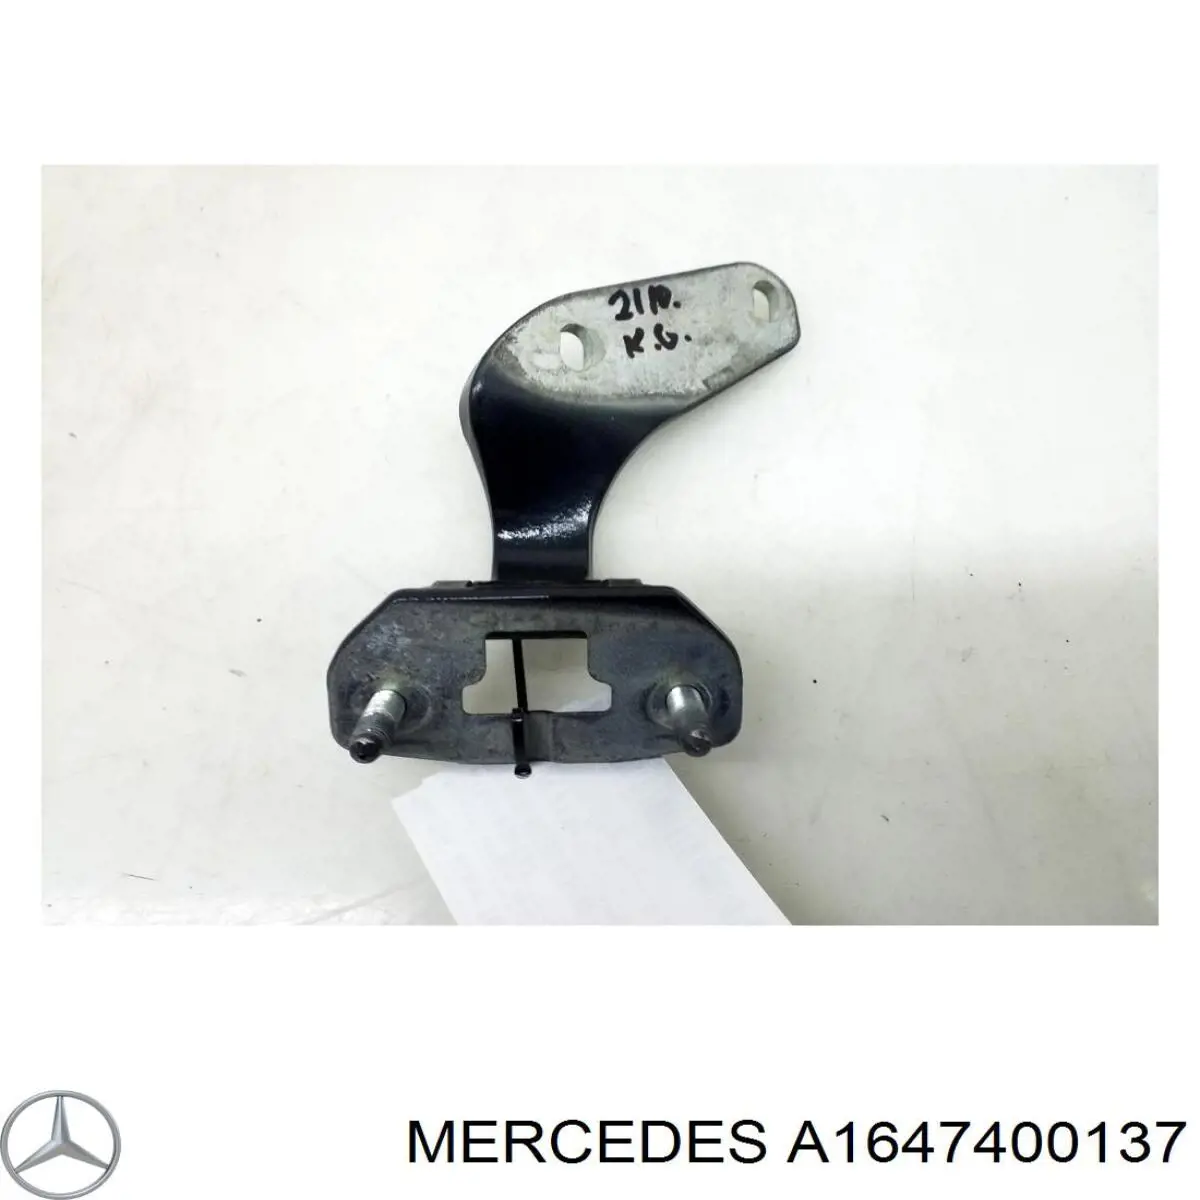 A1647400137 Mercedes bisagra de puerta de maletero